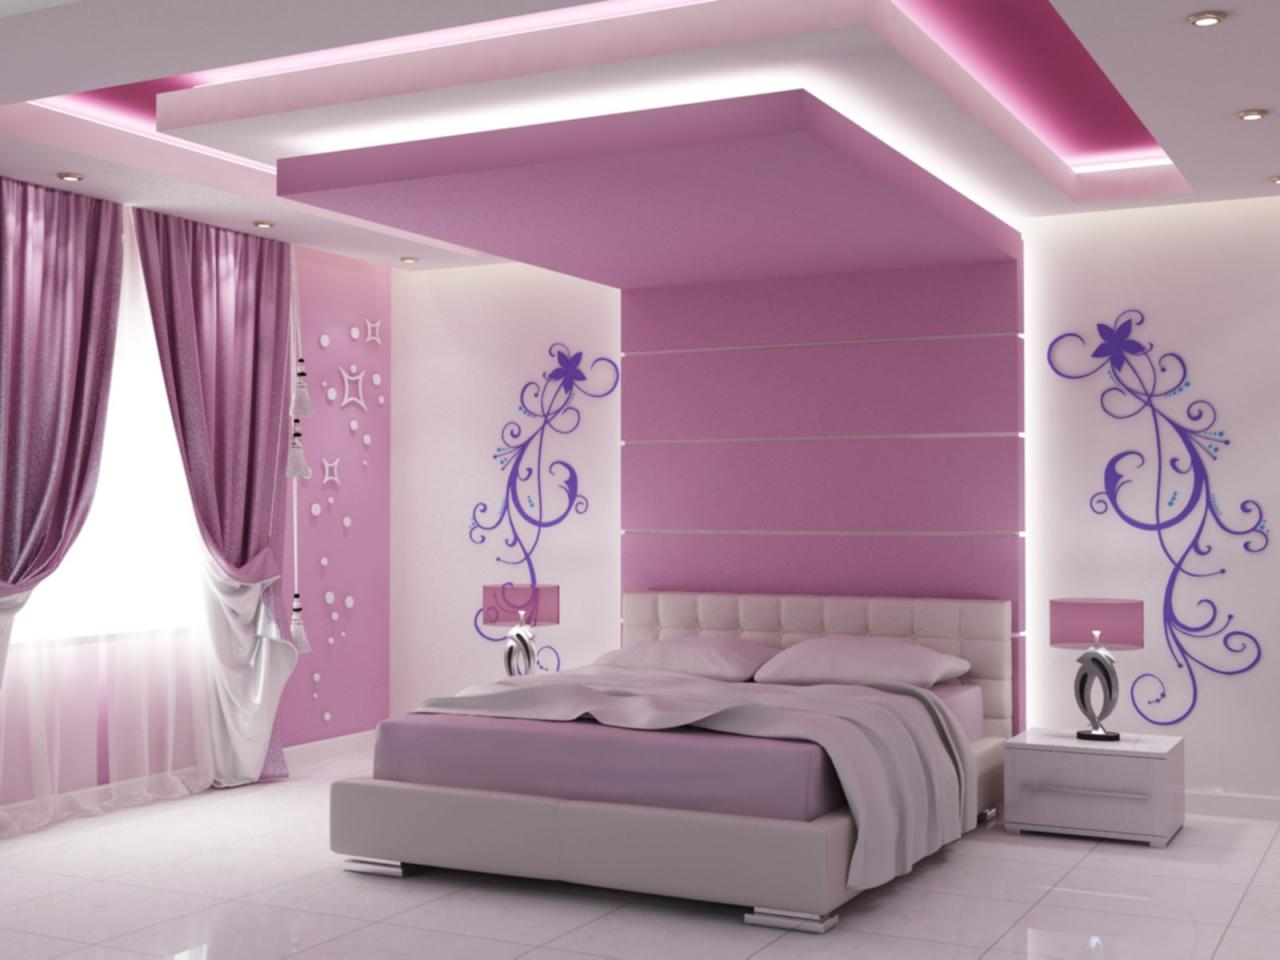 طلاء غرف النوم الوان دهانات رائعة لغرف النوم ابداع افكار